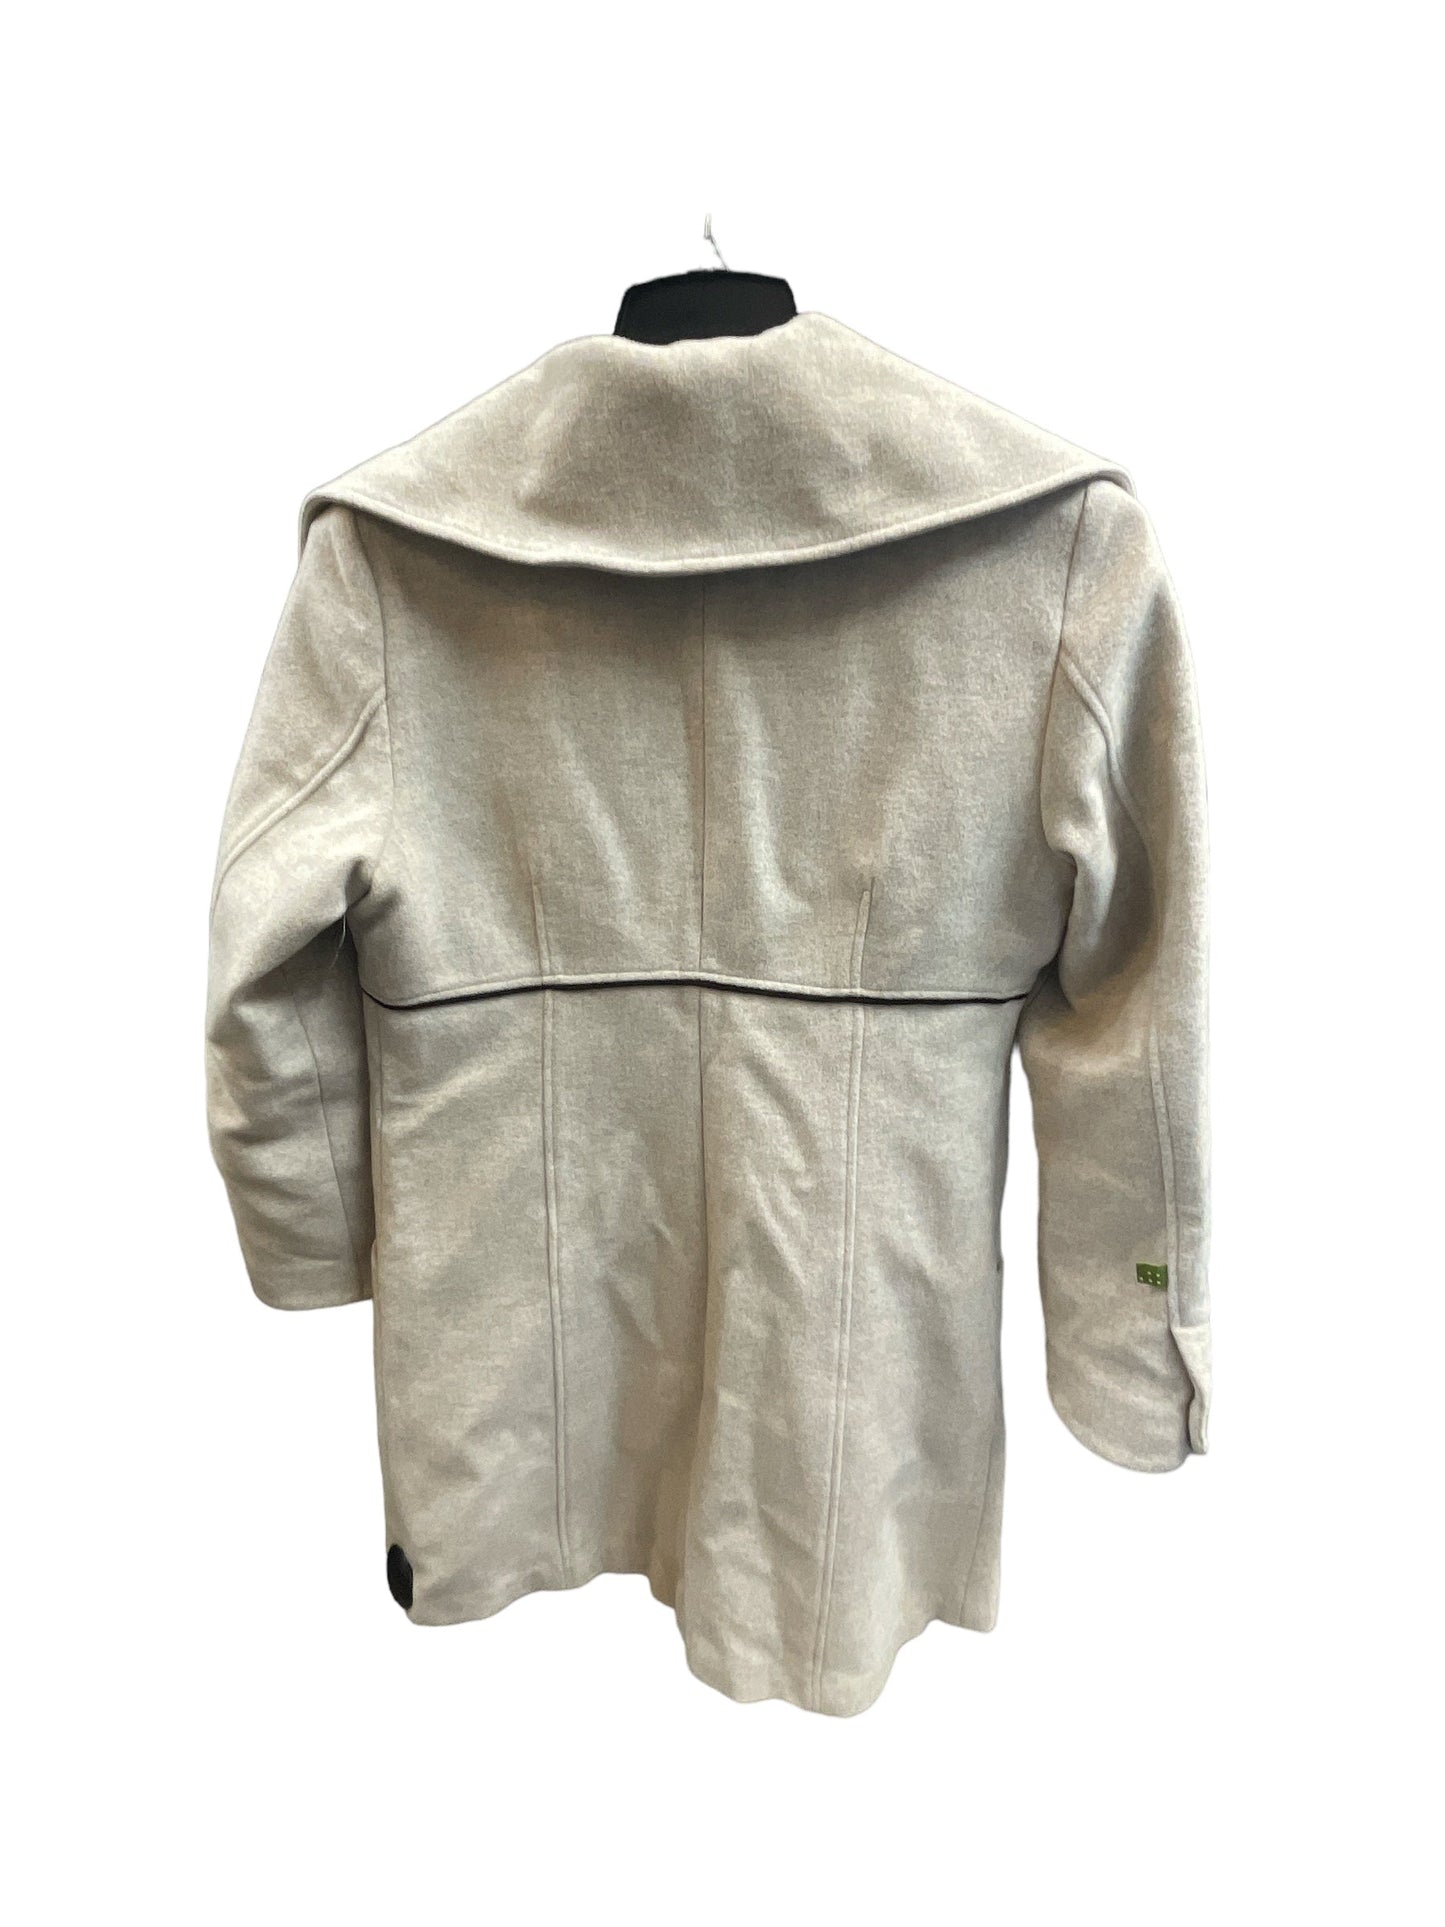 Coat Peacoat By Cma  Size: L